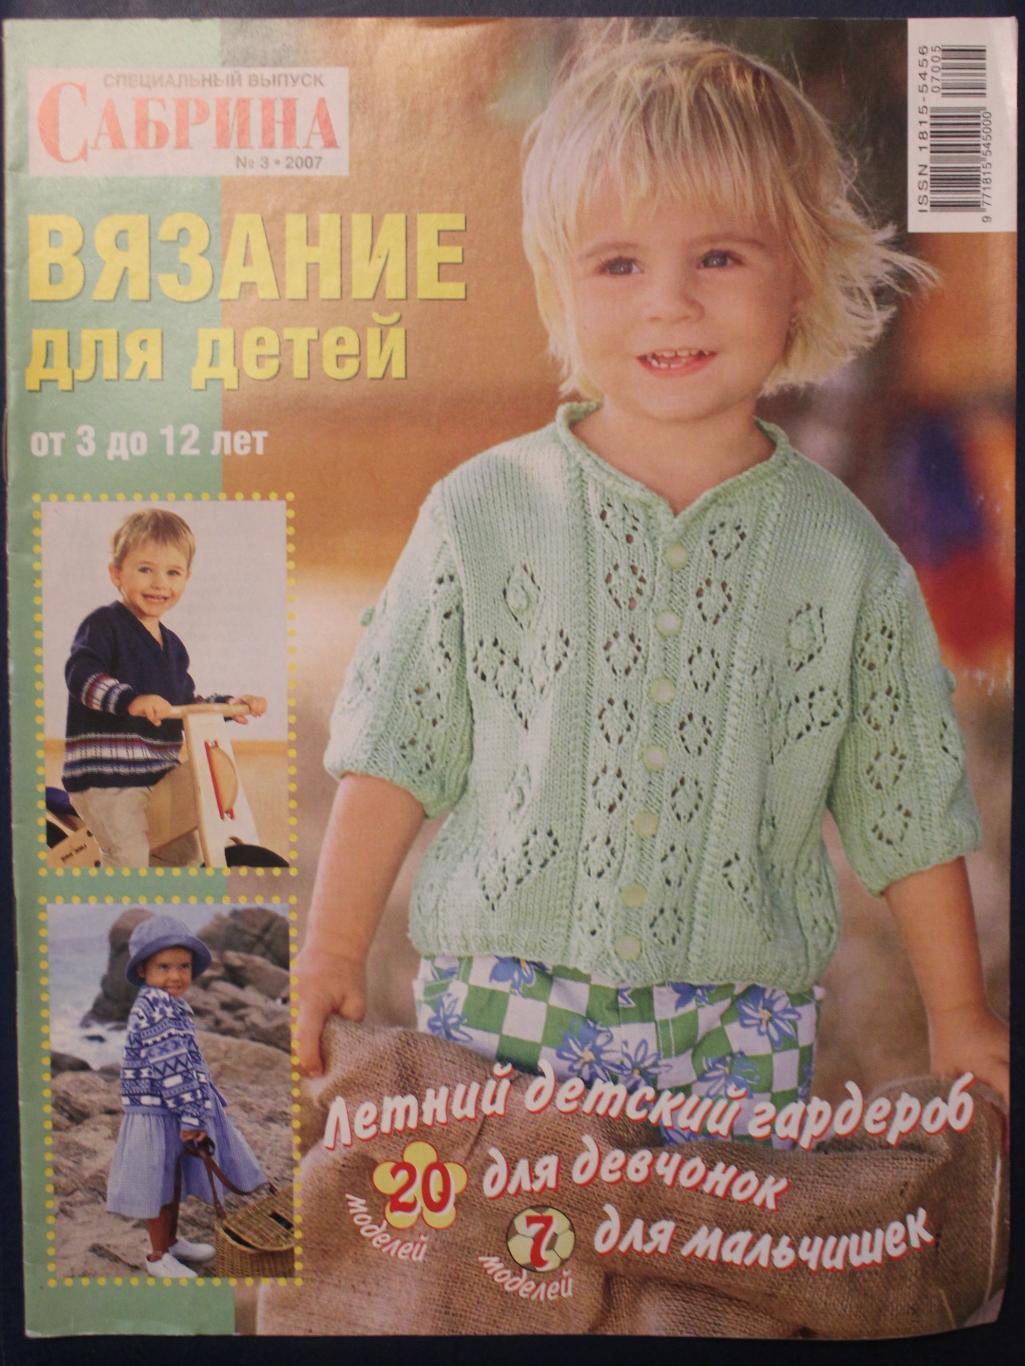 Сабрина Вязание для детей 2008 №05